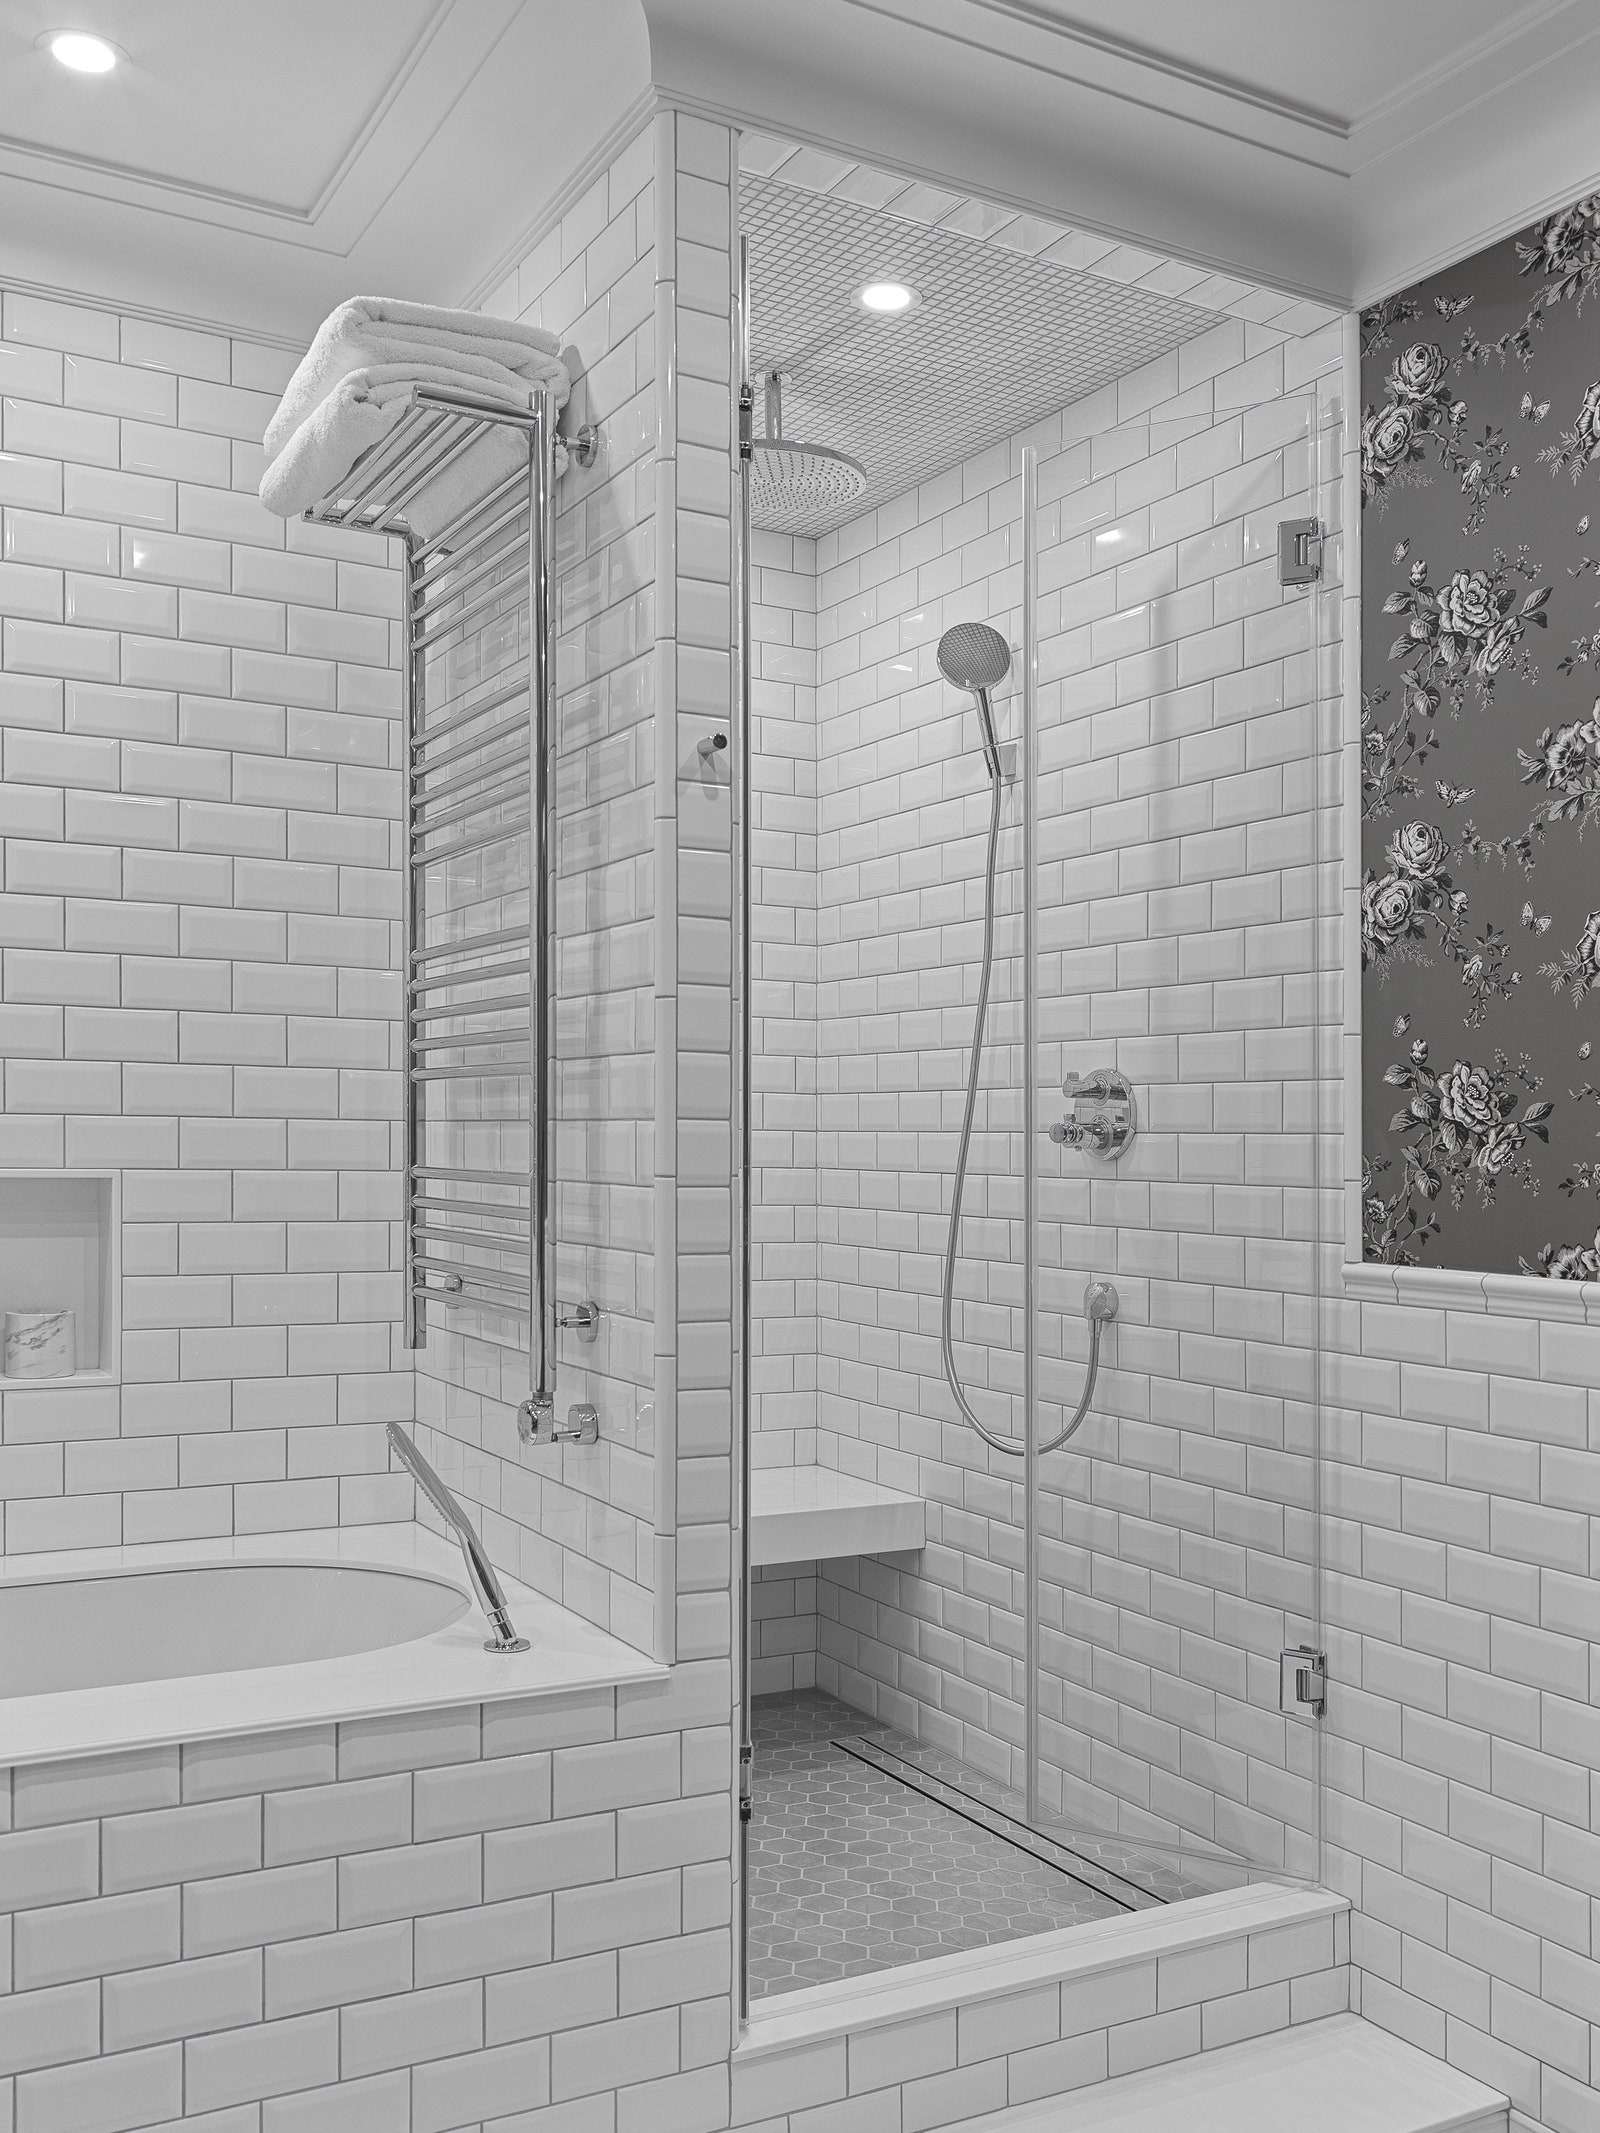 Фрагмент ванной комнаты. Обои из коллекции Archival English Ralph Lauren Home.